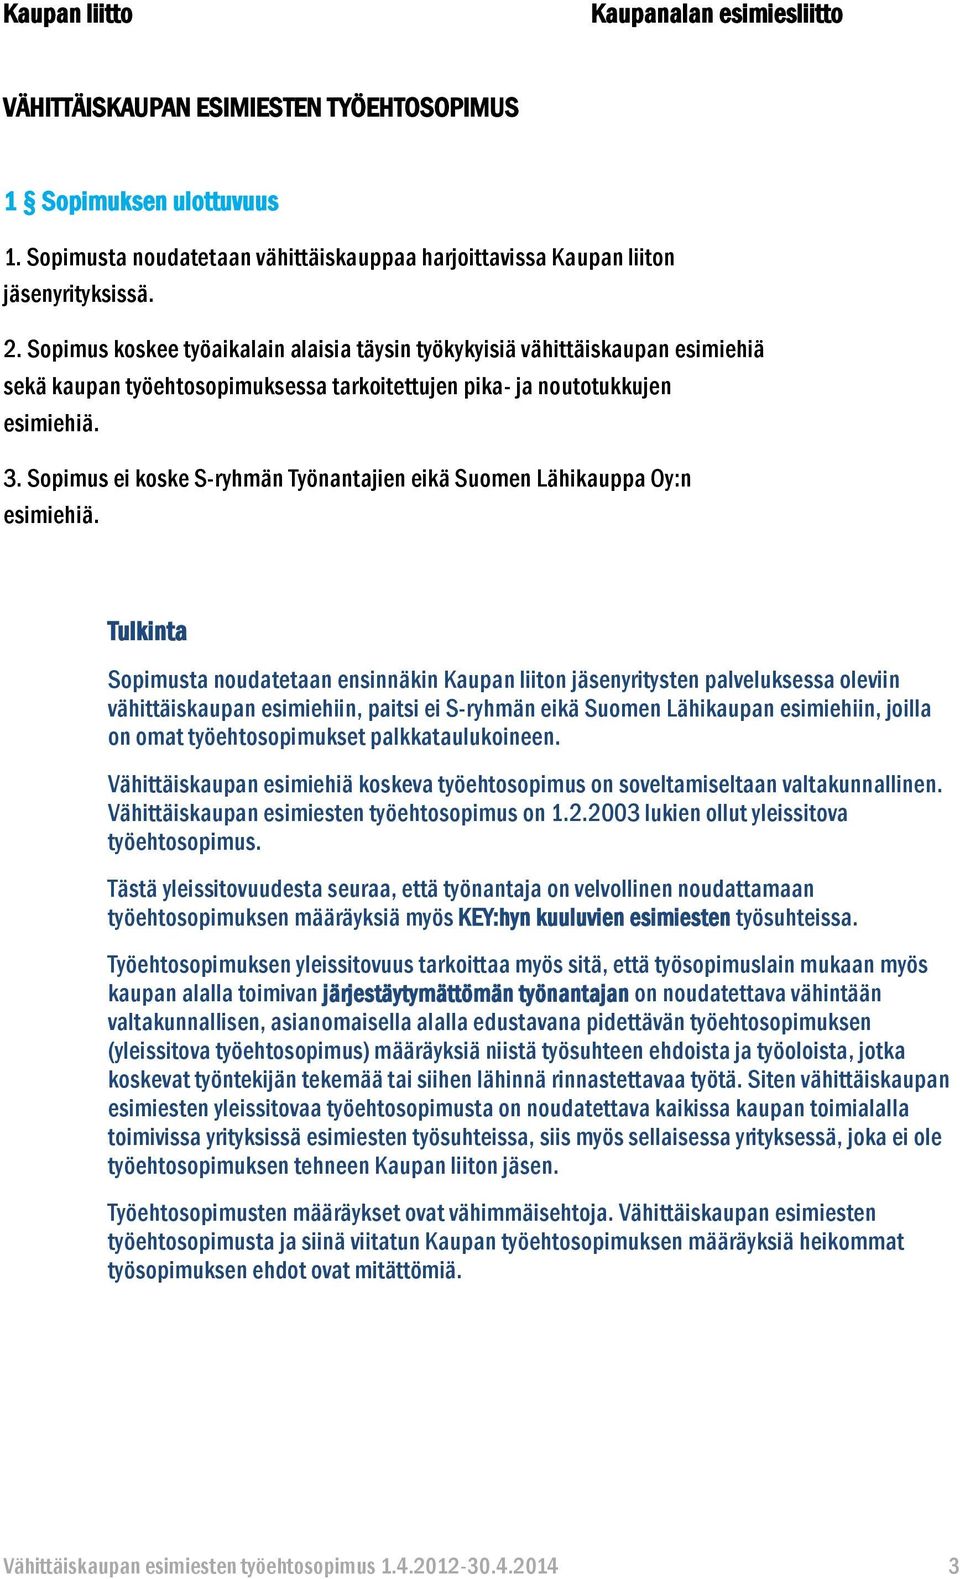 Sopimus ei koske S-ryhmän Työnantajien eikä Suomen Lähikauppa Oy:n esimiehiä.